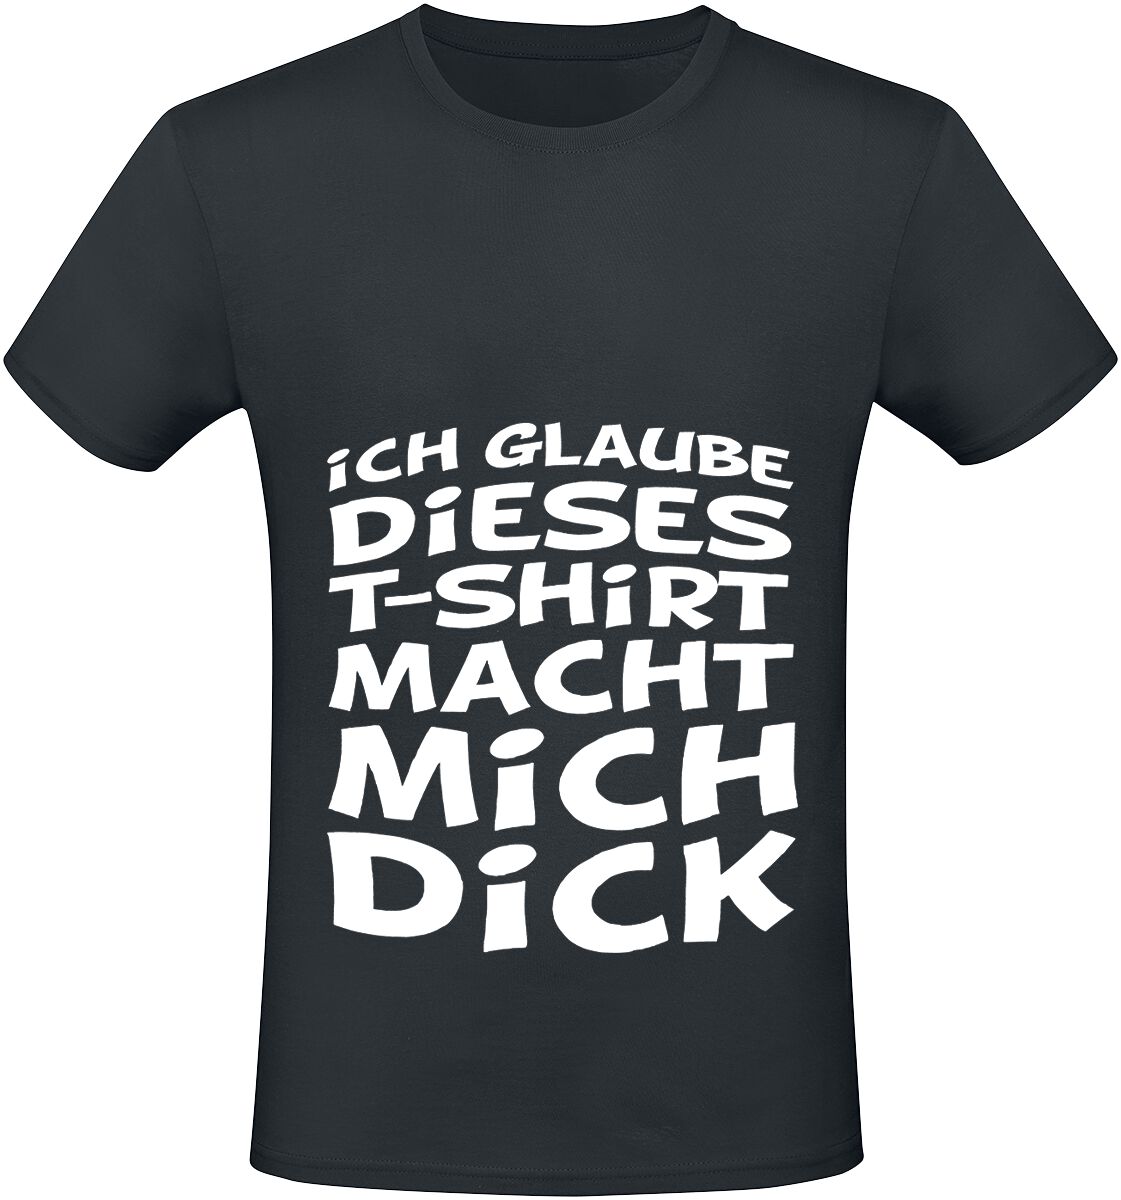 Sprüche T-Shirt - Ich glaube dieses T-Shirt macht mich dick - XL bis 4XL - für Männer - Größe 4XL - schwarz